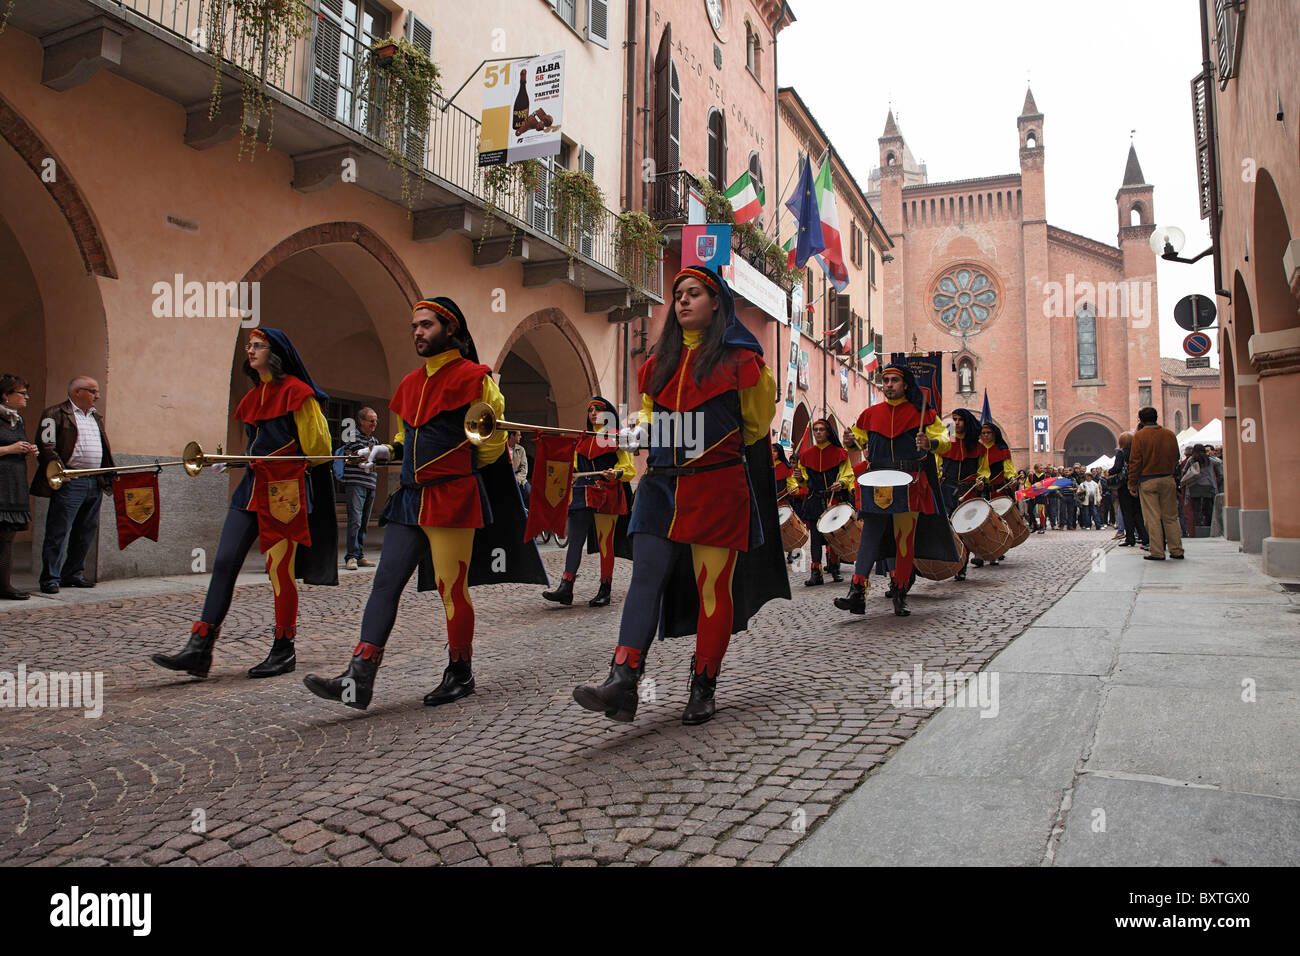 Processione in costume tradizionale, Palio Alba Langhe, Piemonte, Italia Foto Stock